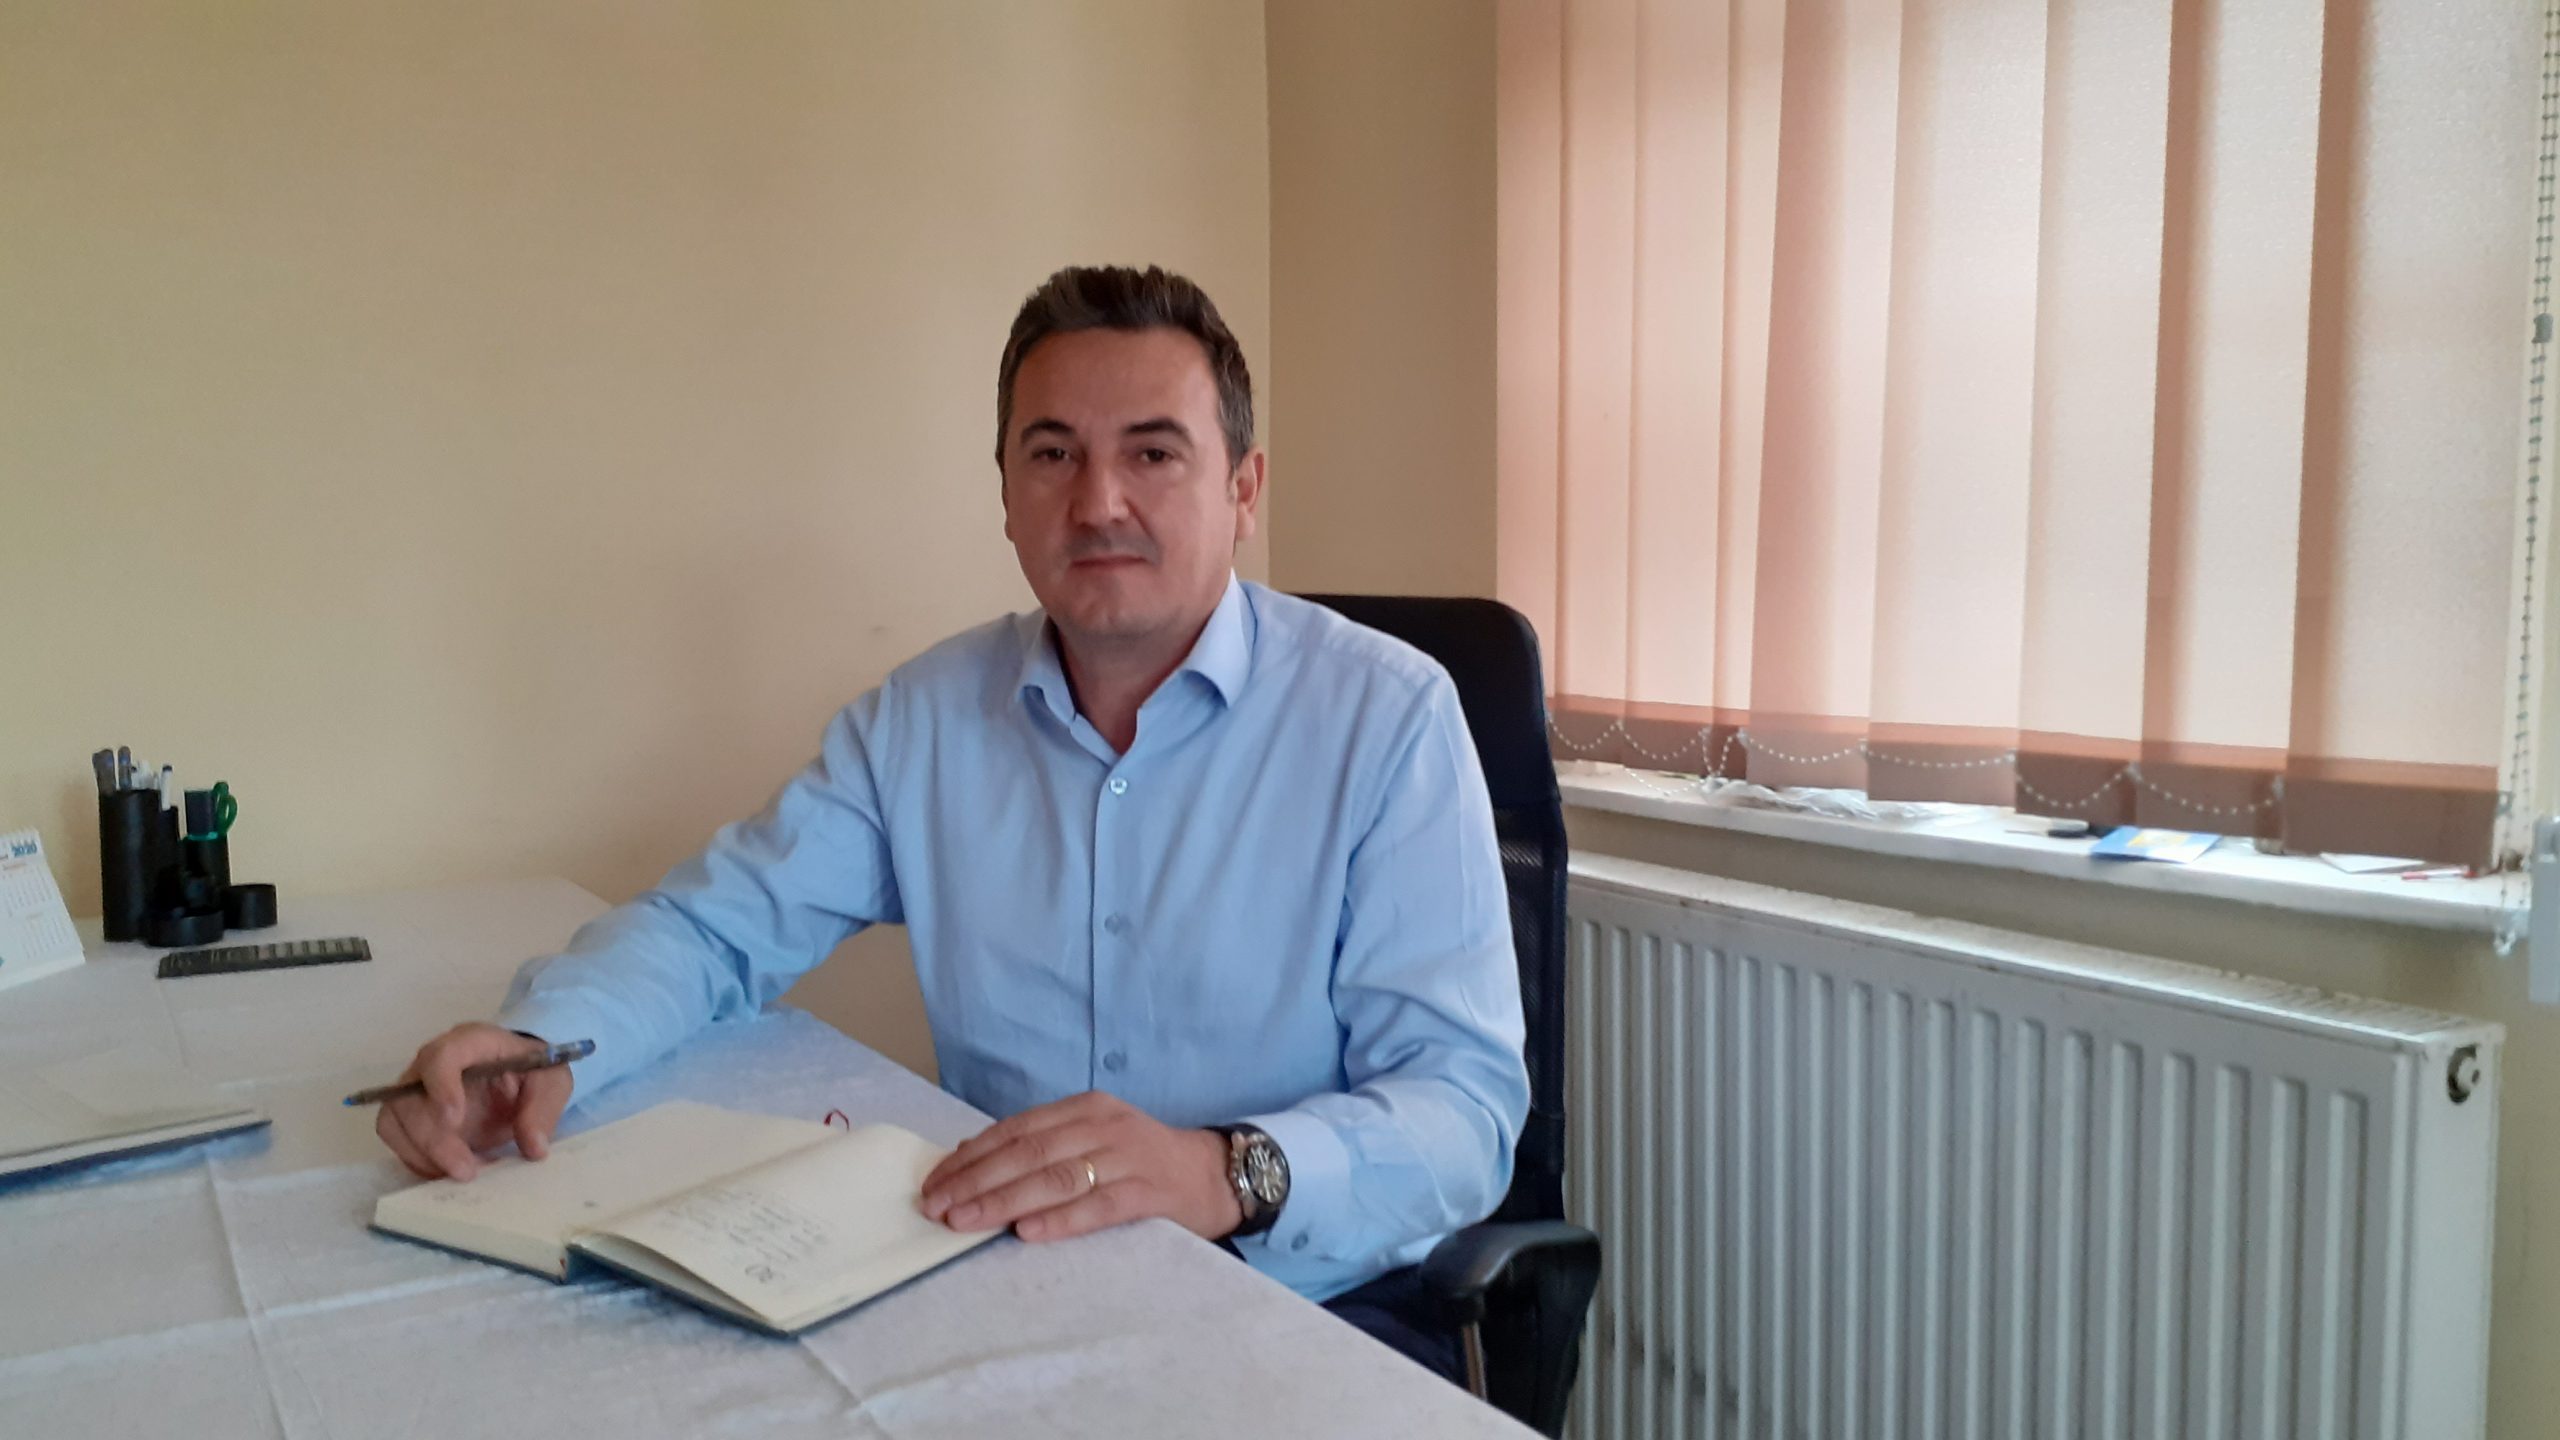 Primarul Constantin Catrina rezolvă problemele legate de debitul apei din localitate